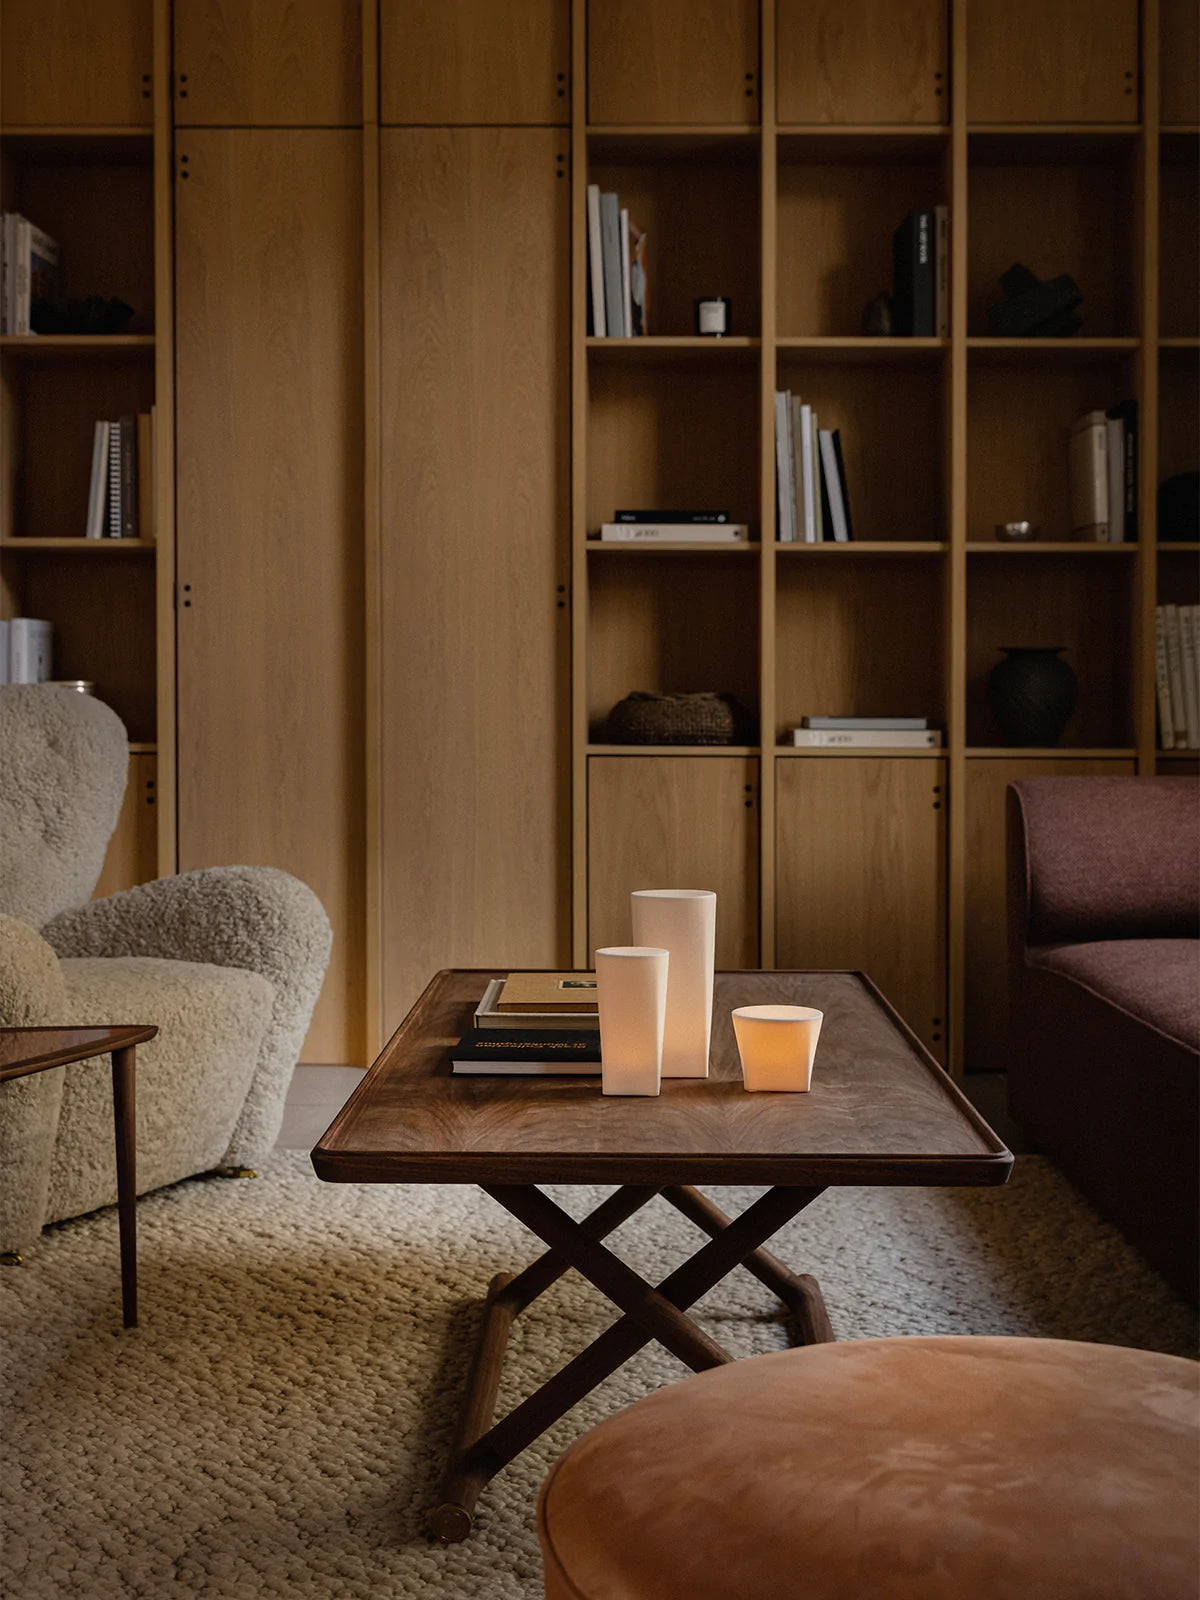 Jäger Lounge Table by Audo Copenhagen